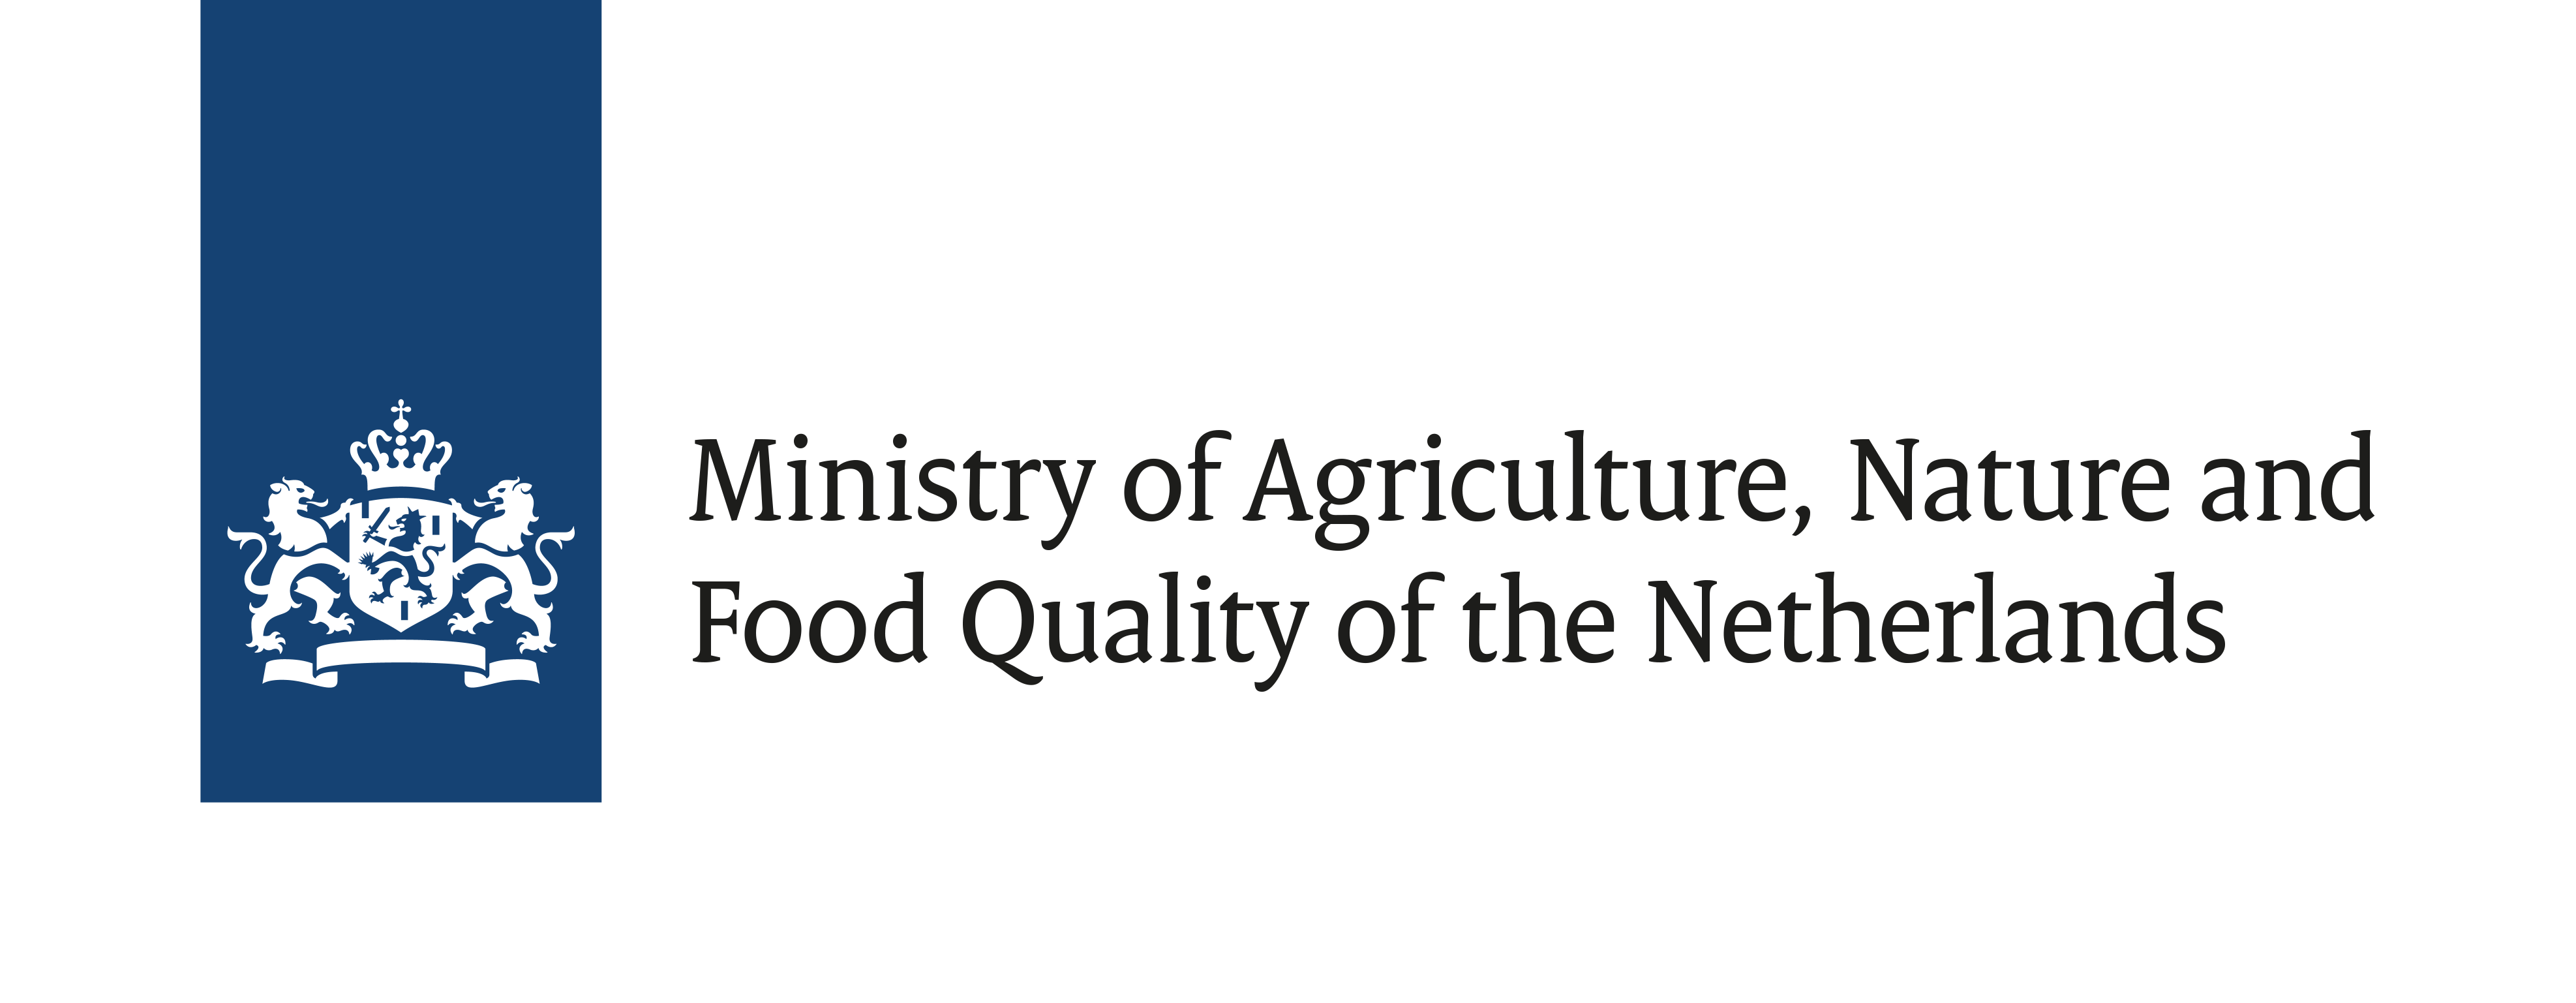 Ministerie van Landbouw, Natuur en Voedselkwaliteit